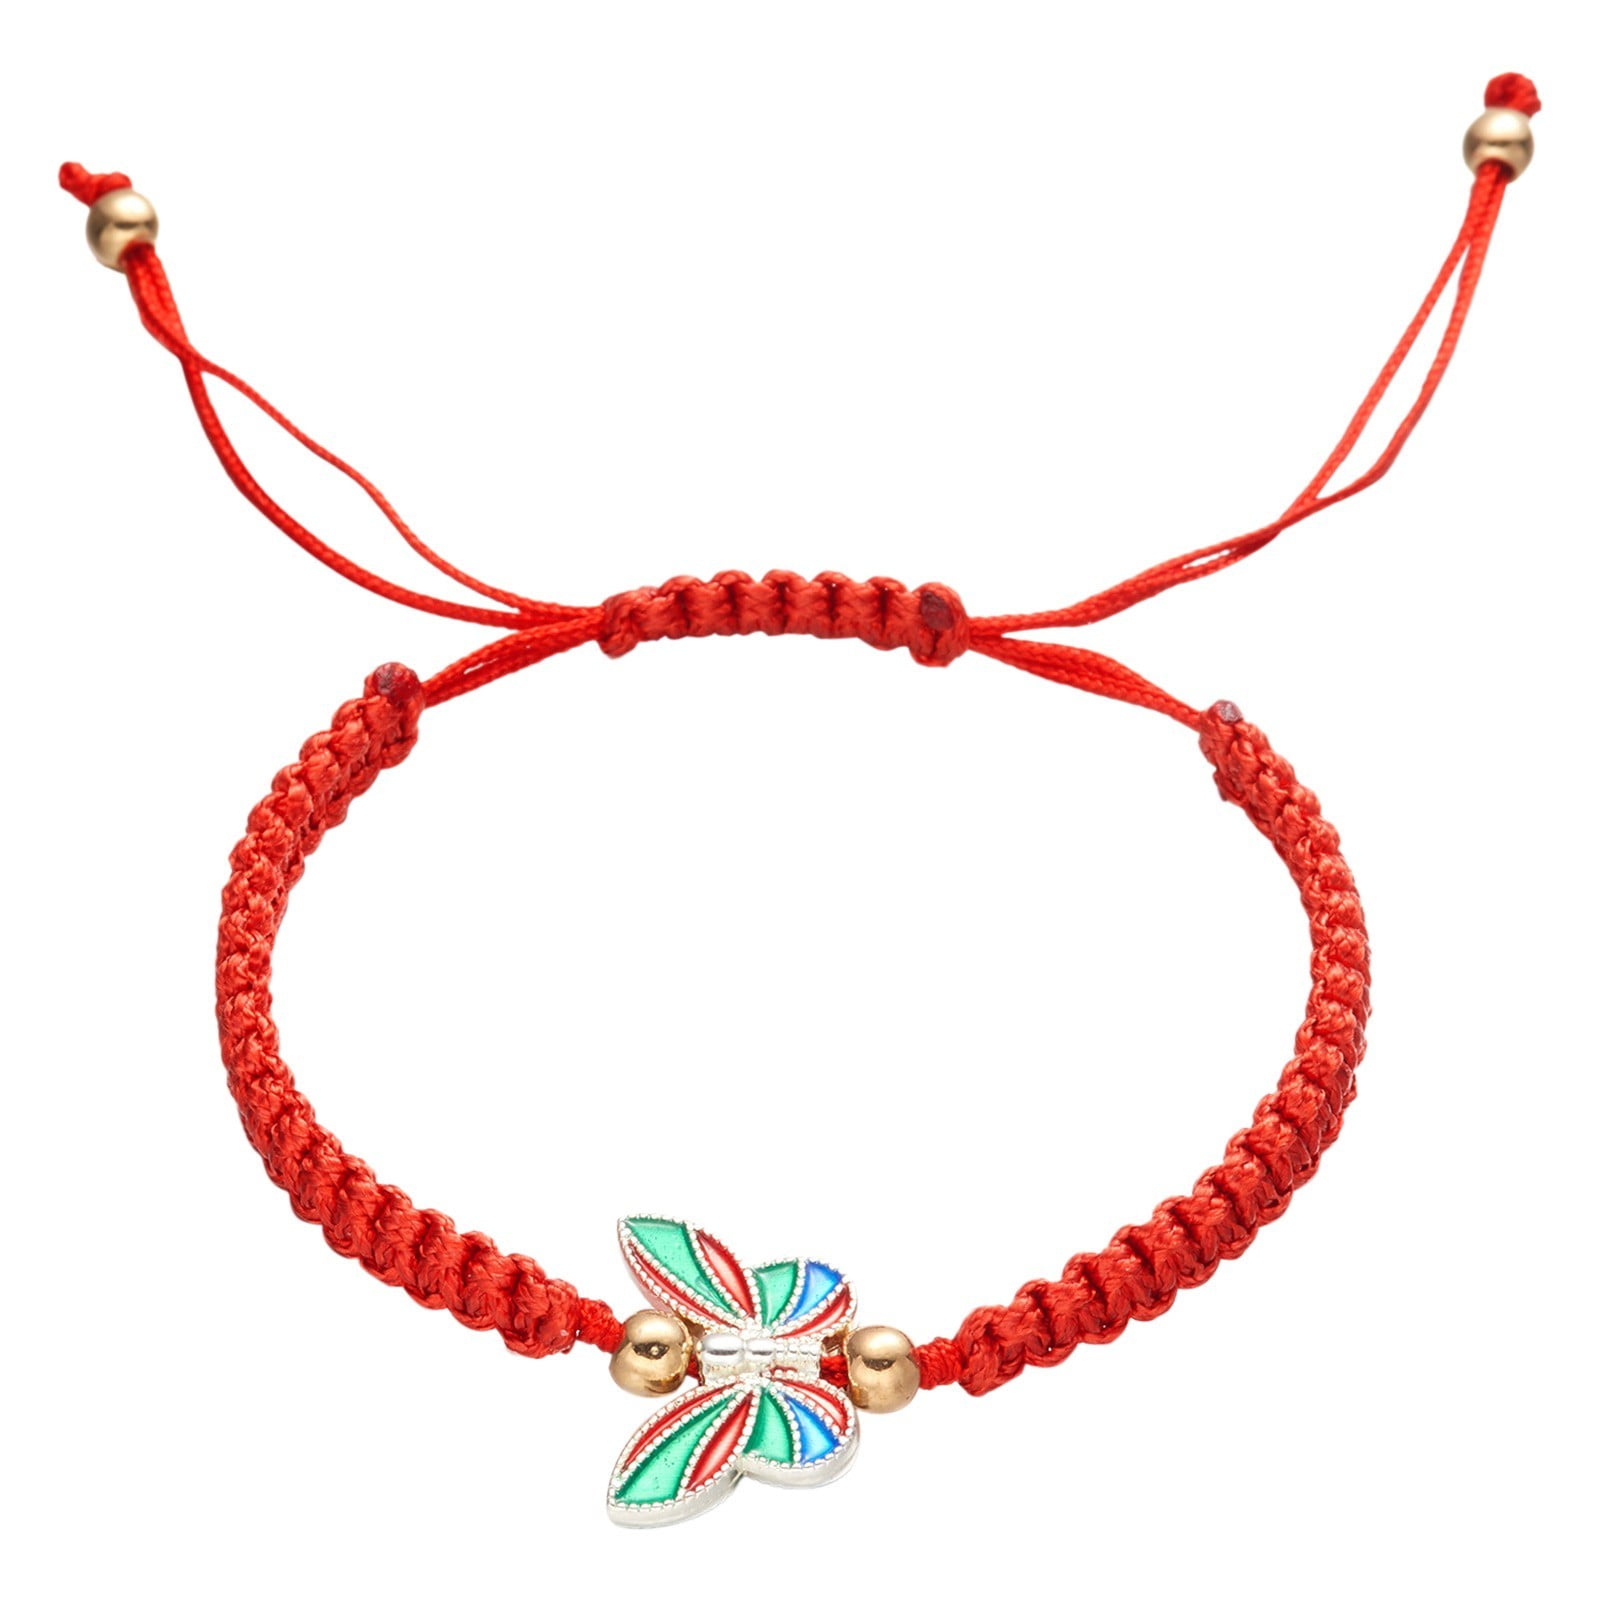 XIAQUJ Hand Woven Butterfly Pendant Bracelet Adjustable New Year Red Rope  Bracelet Bracelet with Red Rope Butterfly Pendant Bracelets D